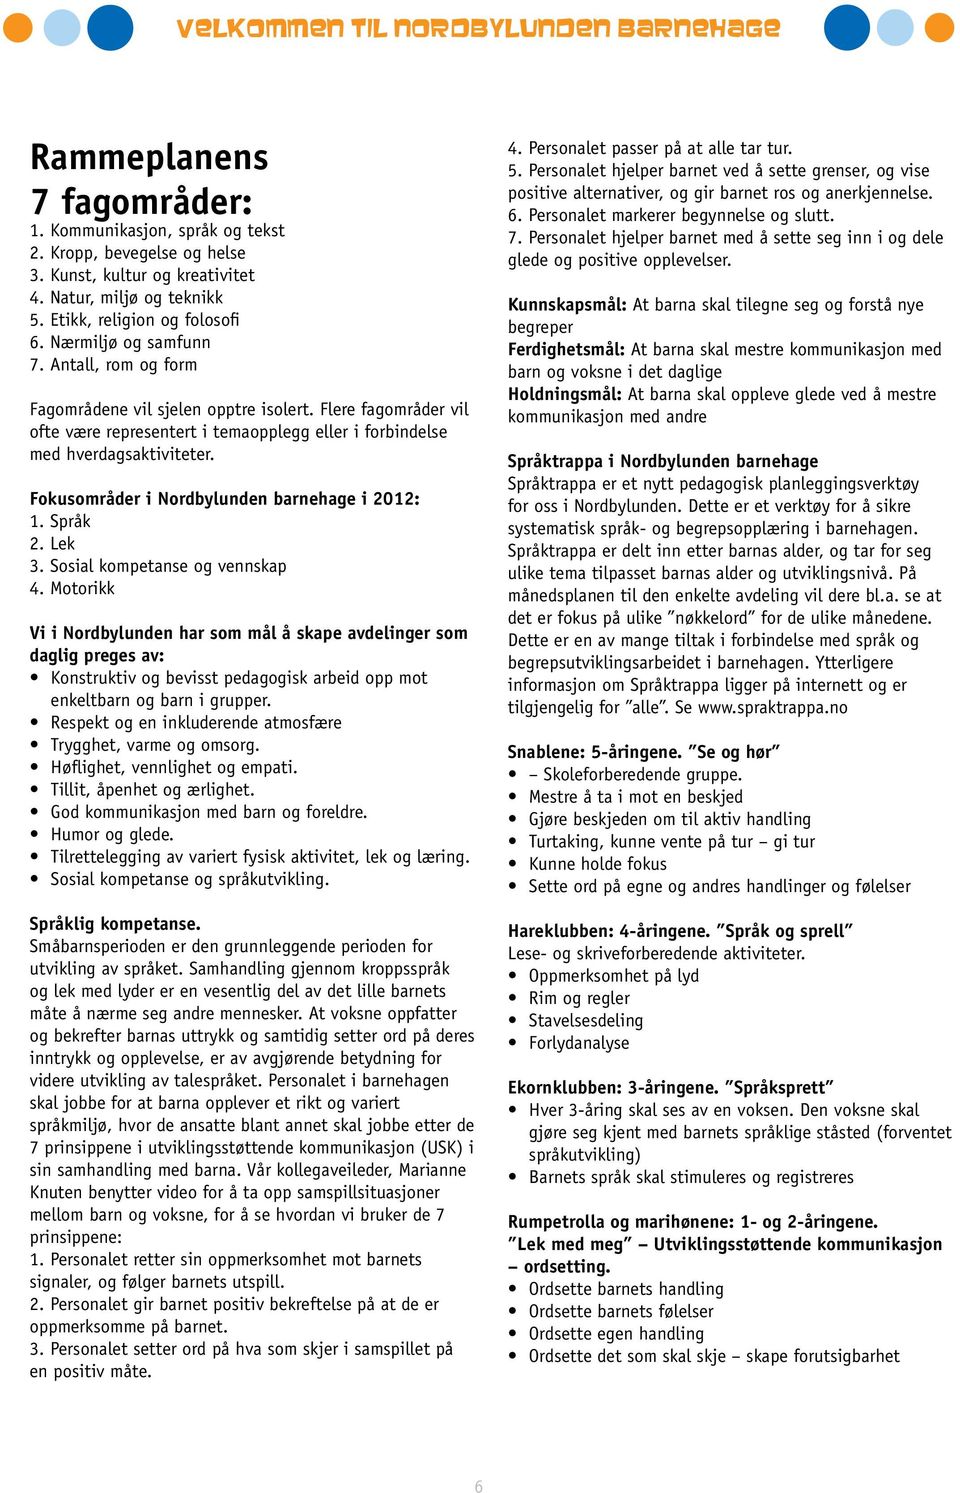 Fokusområder i Nordbylunden barnehage i 2012: 1. Språk 2. Lek 3. Sosial kompetanse og vennskap 4.